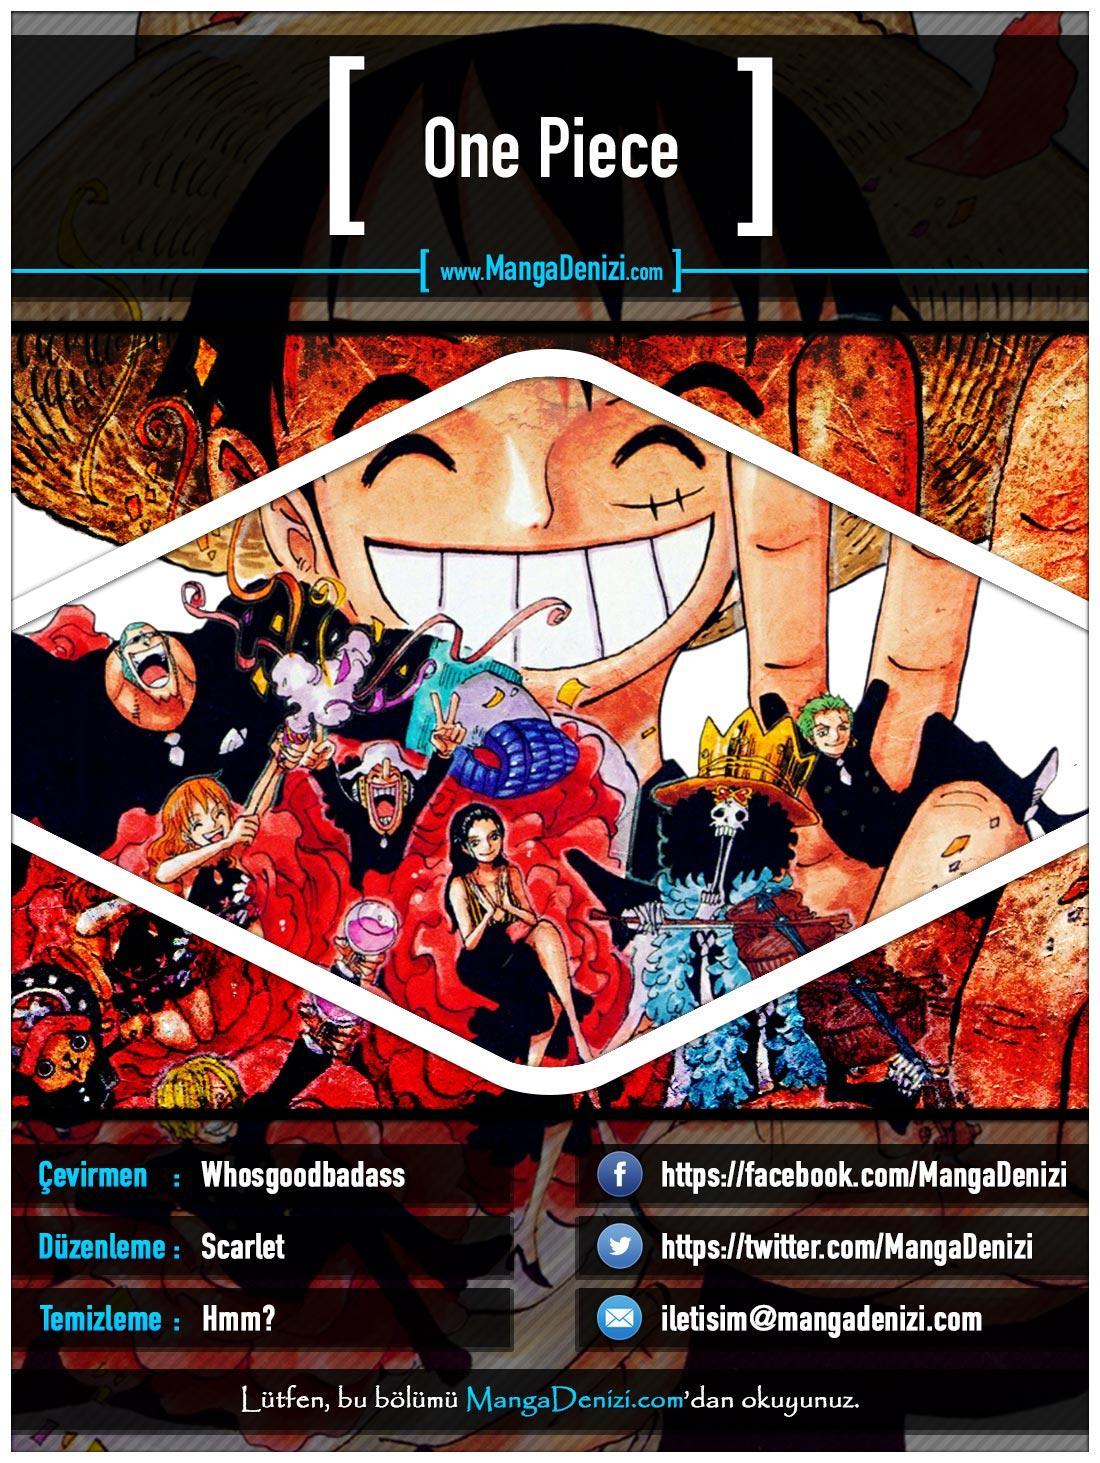 One Piece [Renkli] mangasının 0637 bölümünün 1. sayfasını okuyorsunuz.